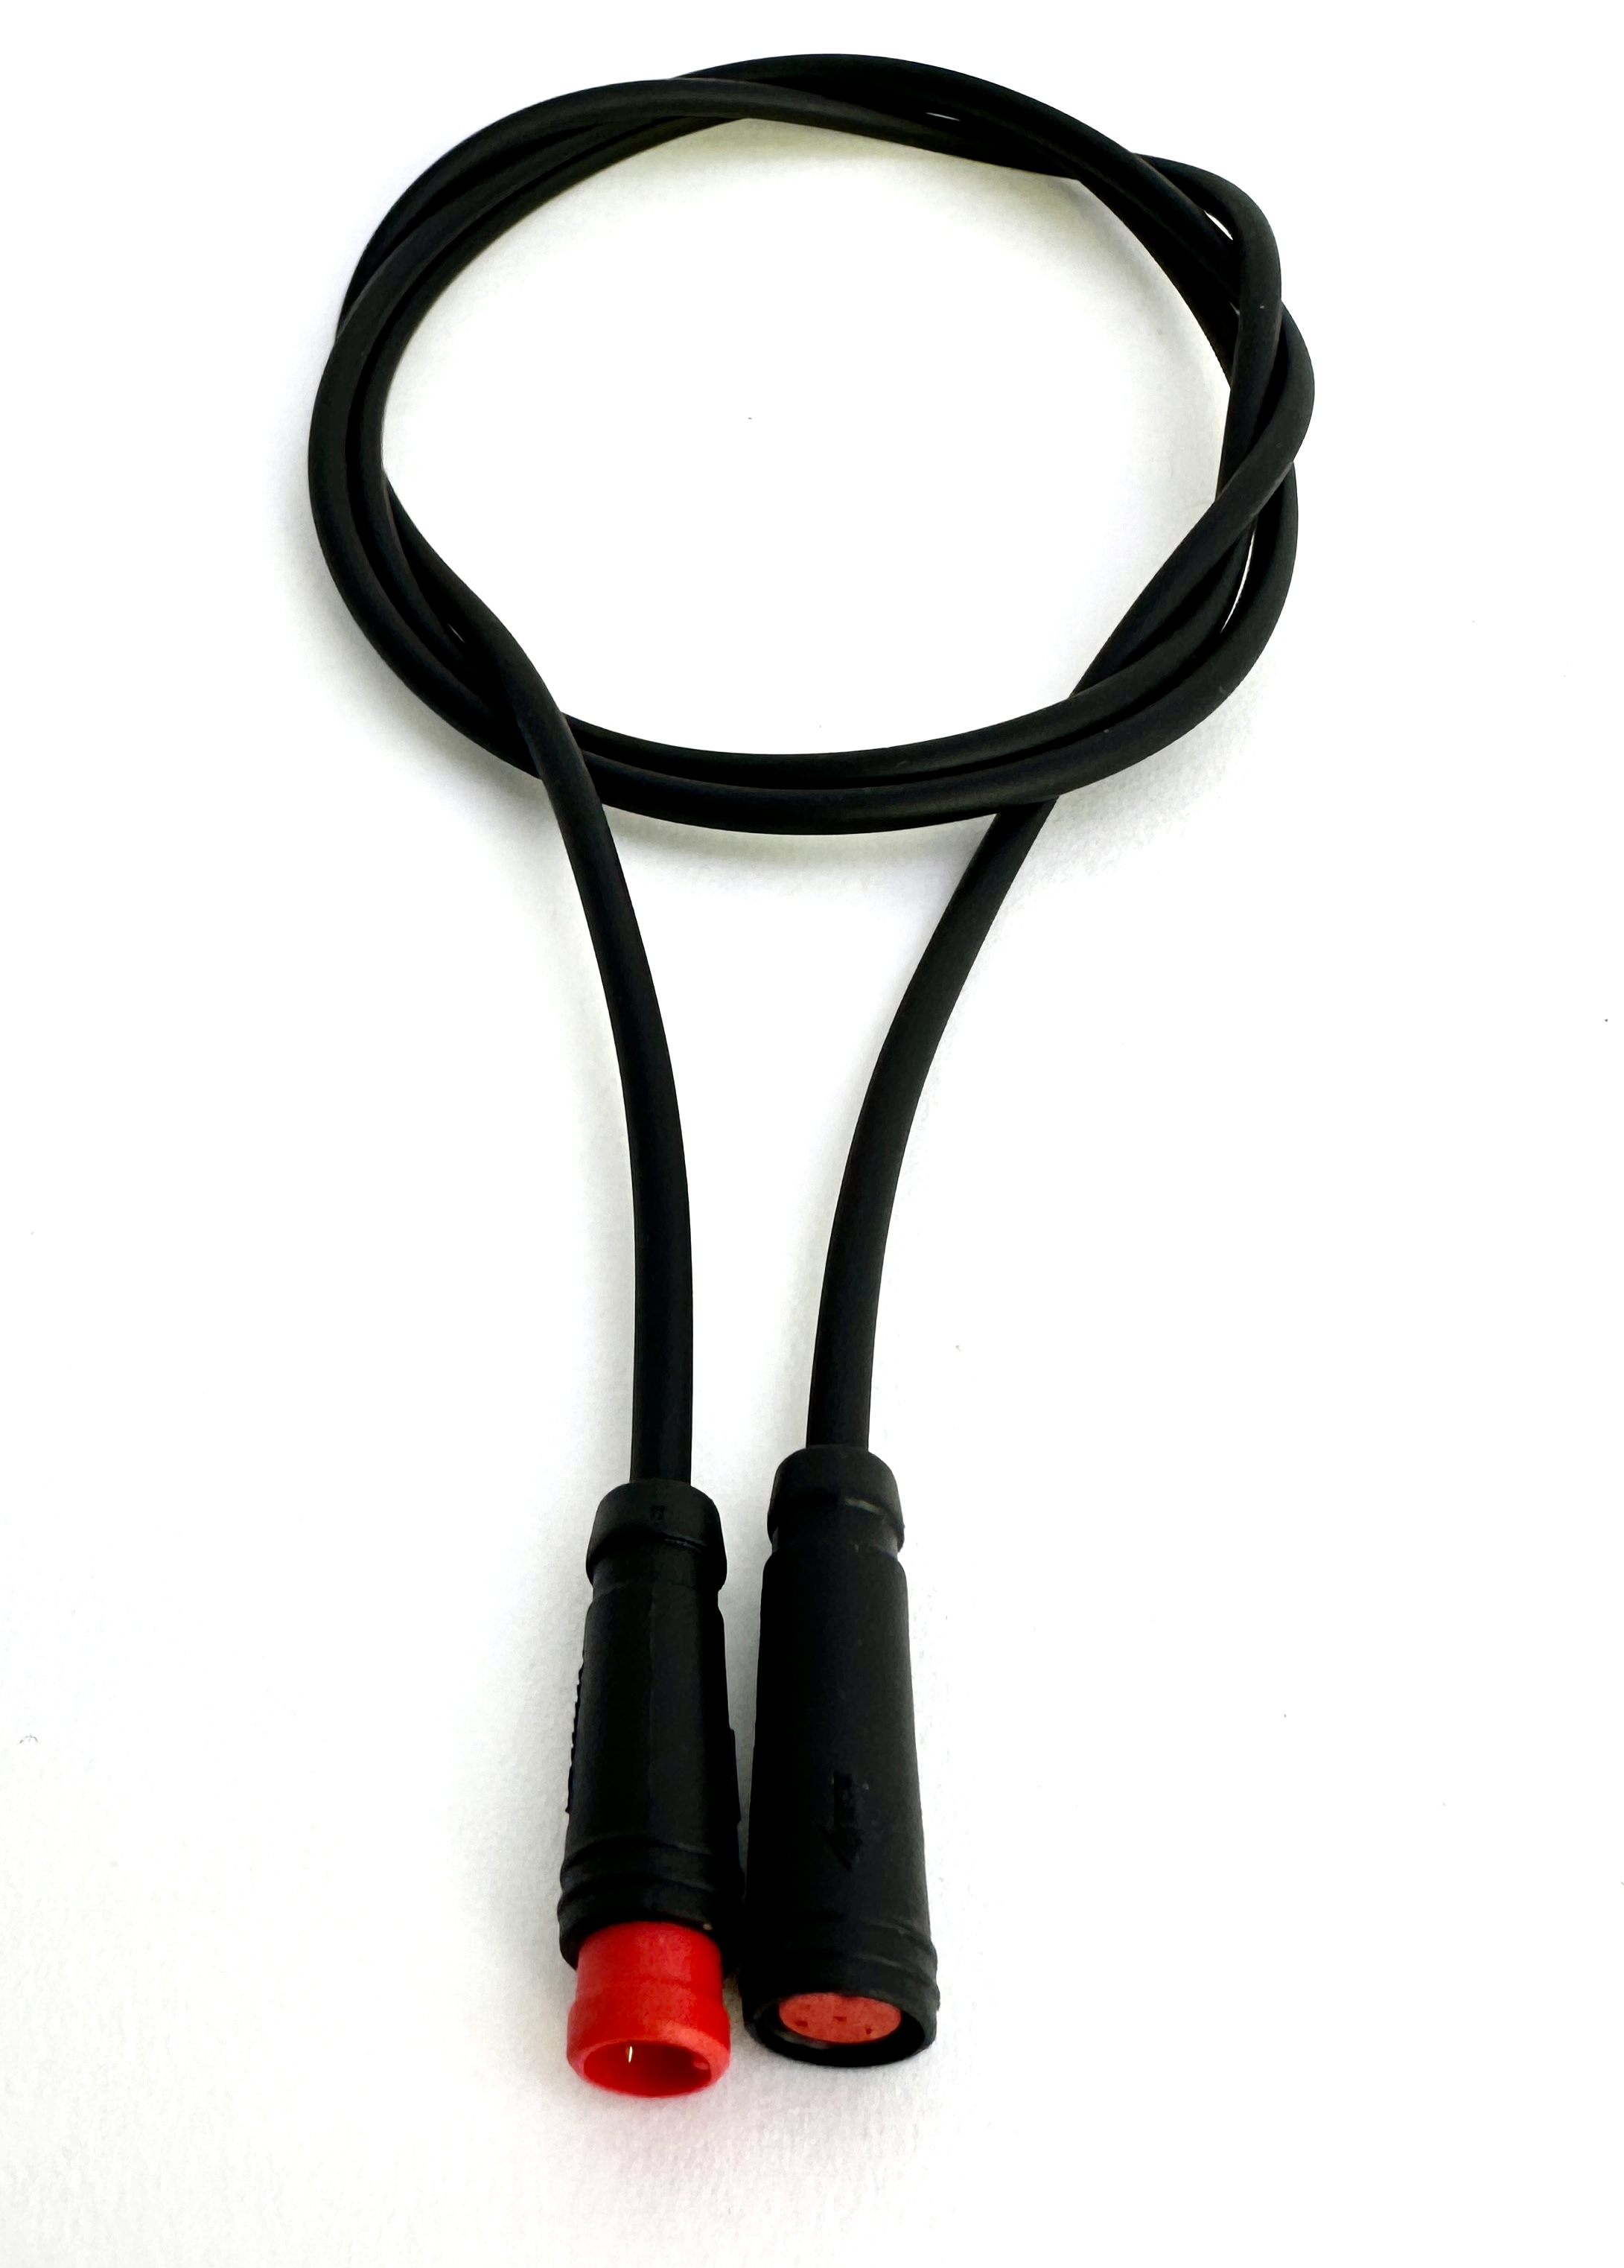 HIGO / Julet cable de extensión de 50 cm para ebike, 2 PIN hembra a macho, rojo